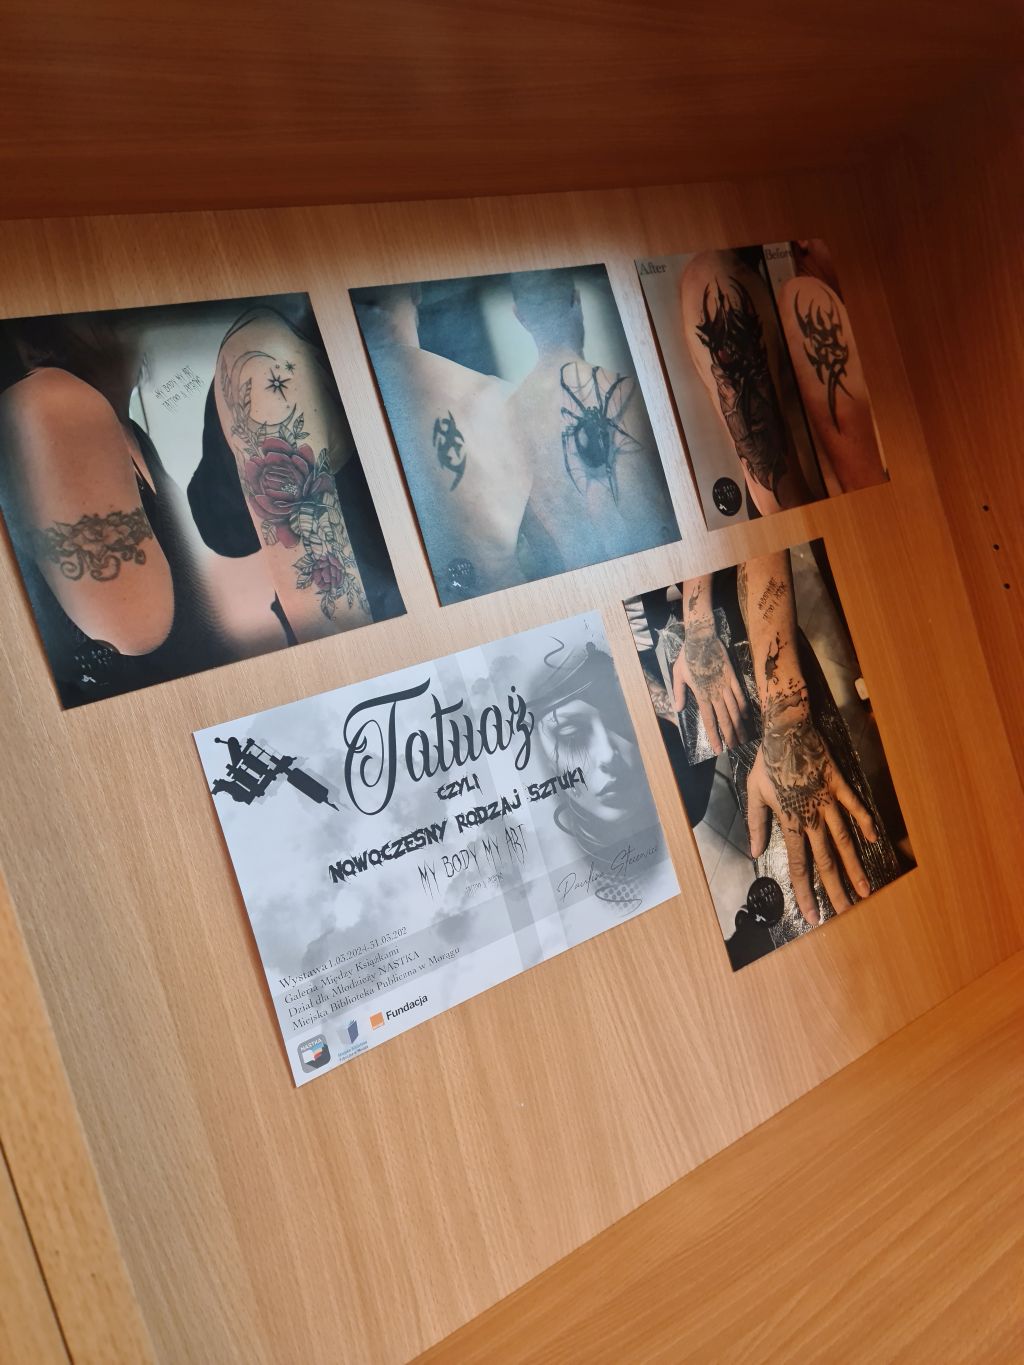 Zdjęcia tatuaży we wnęce regału z książkami